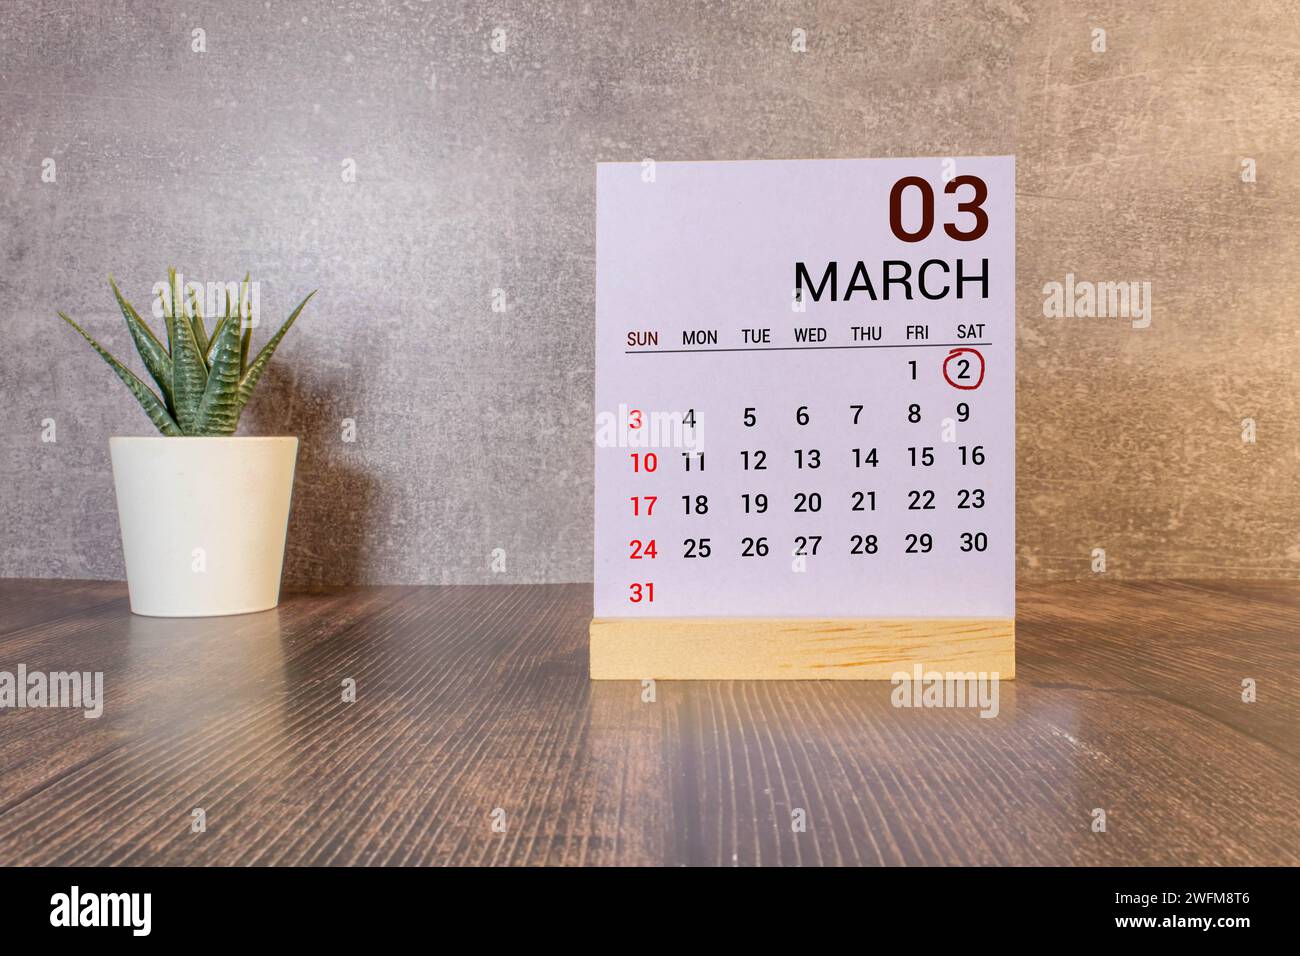 Mars 02 texte de la date du calendrier sur bloc de bois blanc avec des stationeries sur le bureau en bois. Concept de date de calendrier. Banque D'Images